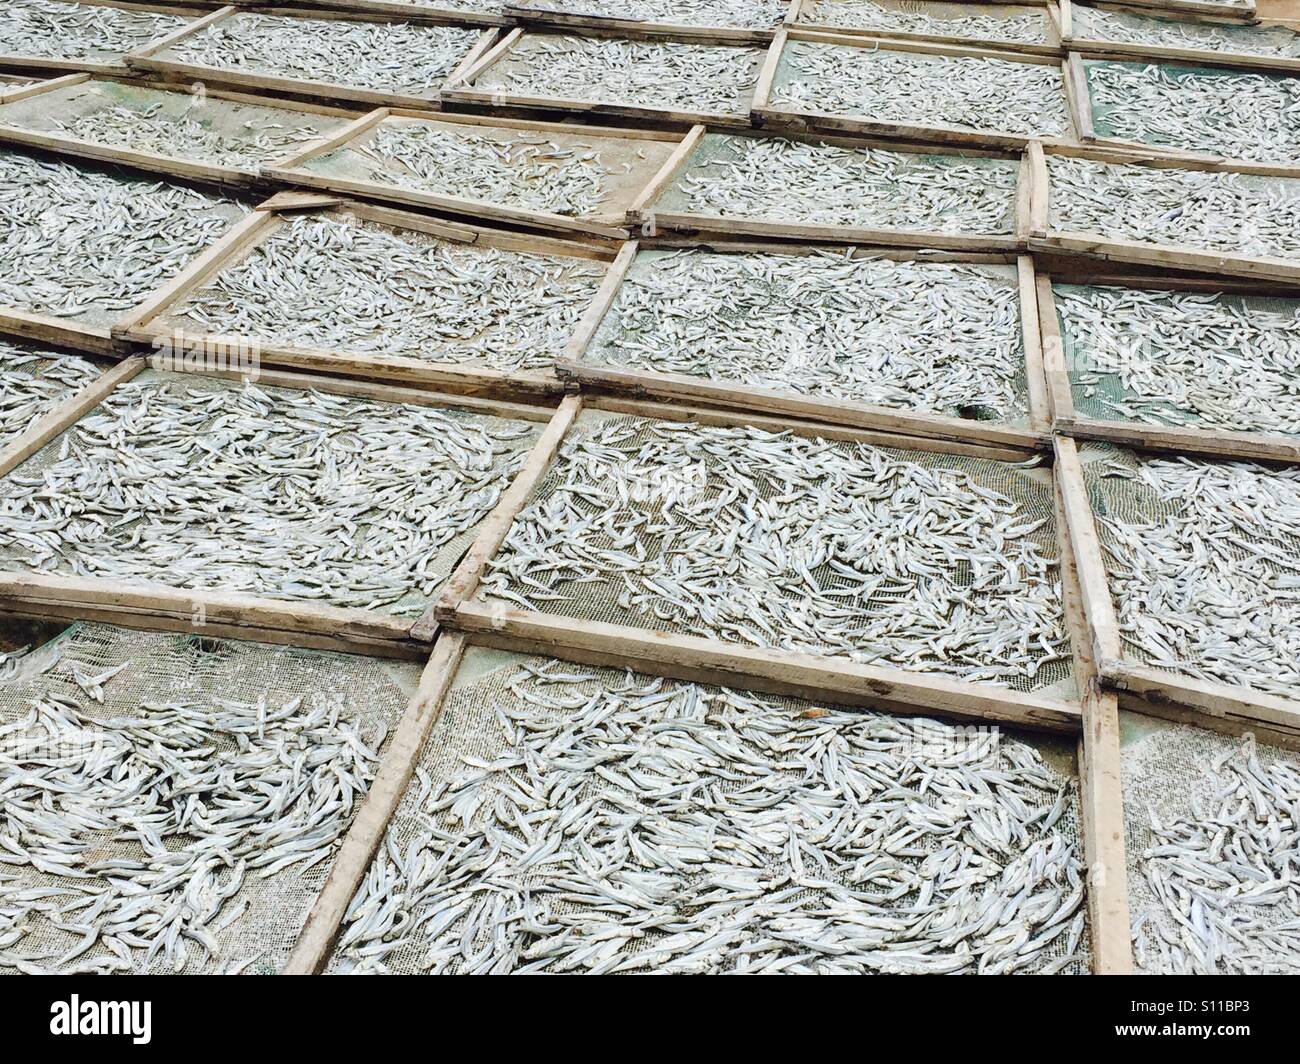 Fish drying in Vietnam Stock Photo